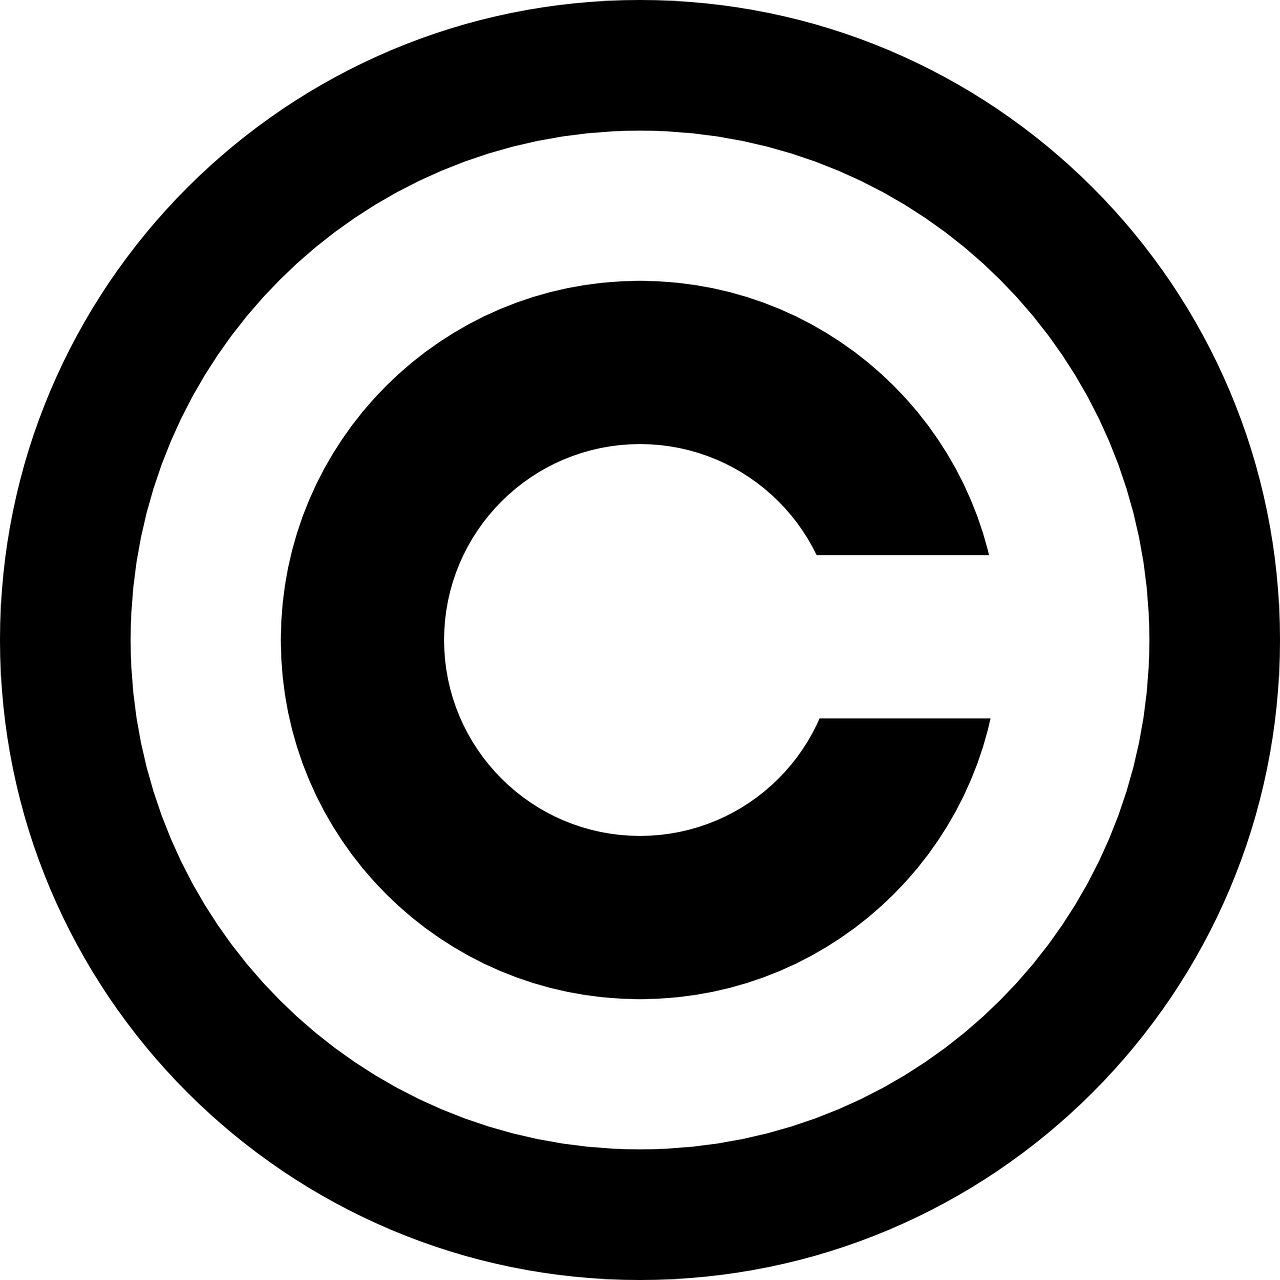 símbolo de copyright